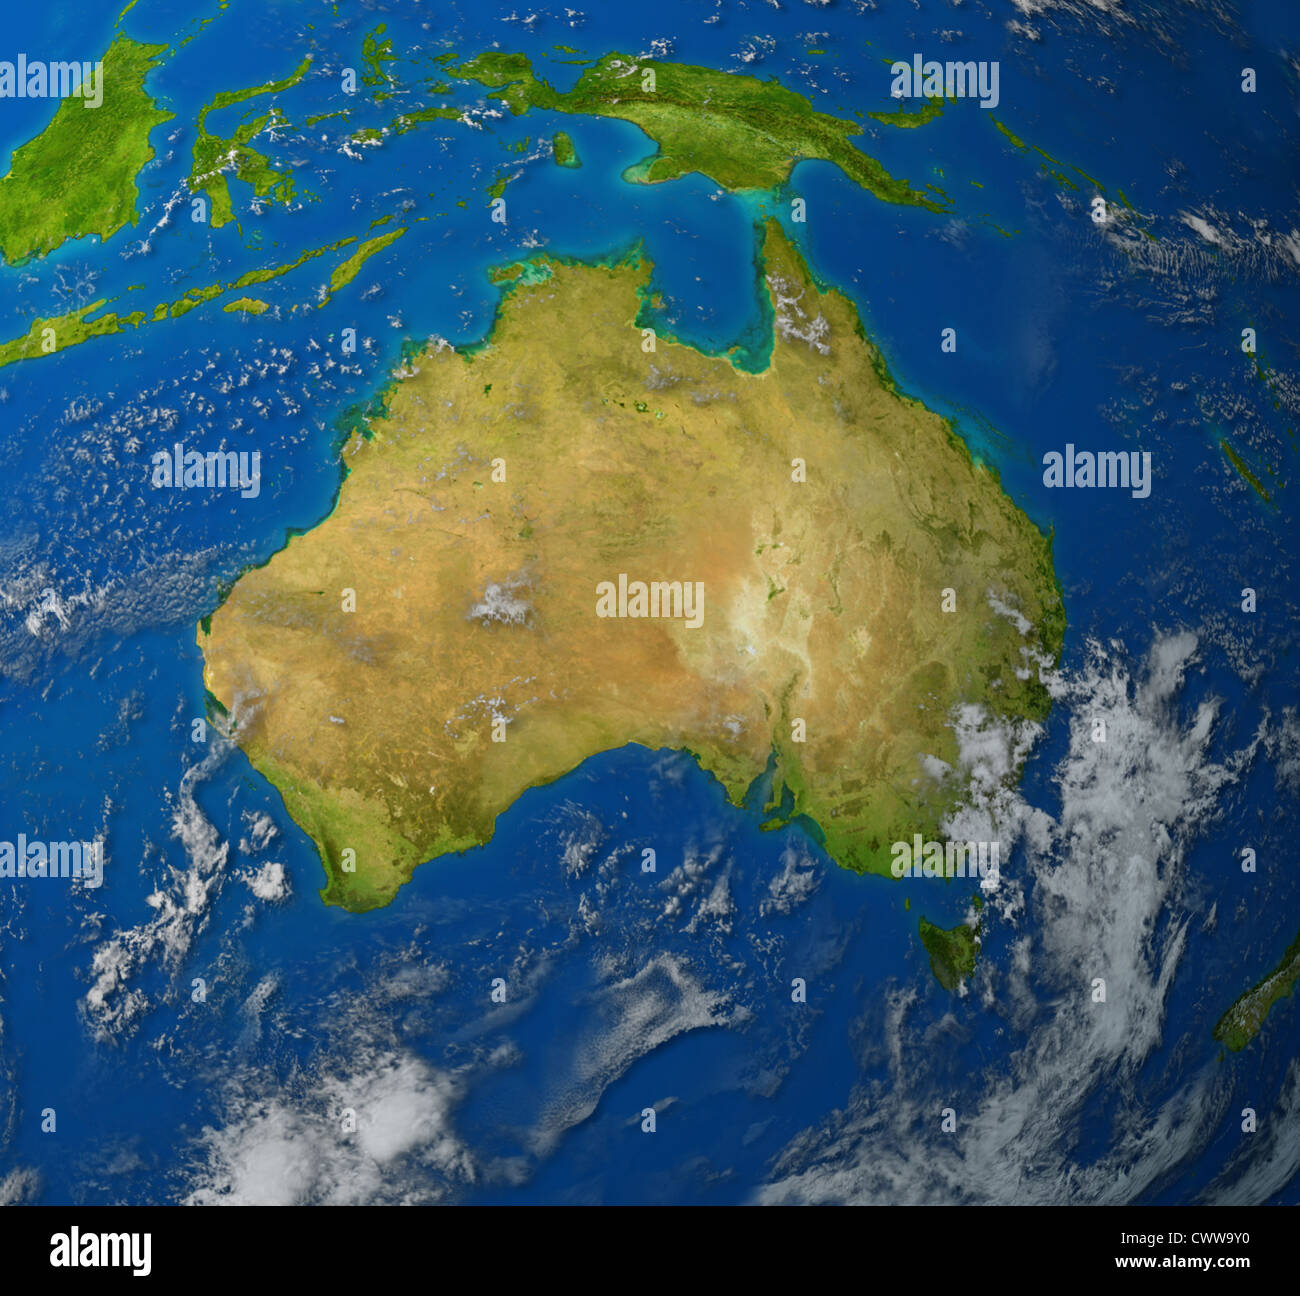 L'australie carte du continent réaliste d'Oceana dans la région du Pacifique de l'Asie qui représente les Ozzies et la terre d'Aussie. Banque D'Images